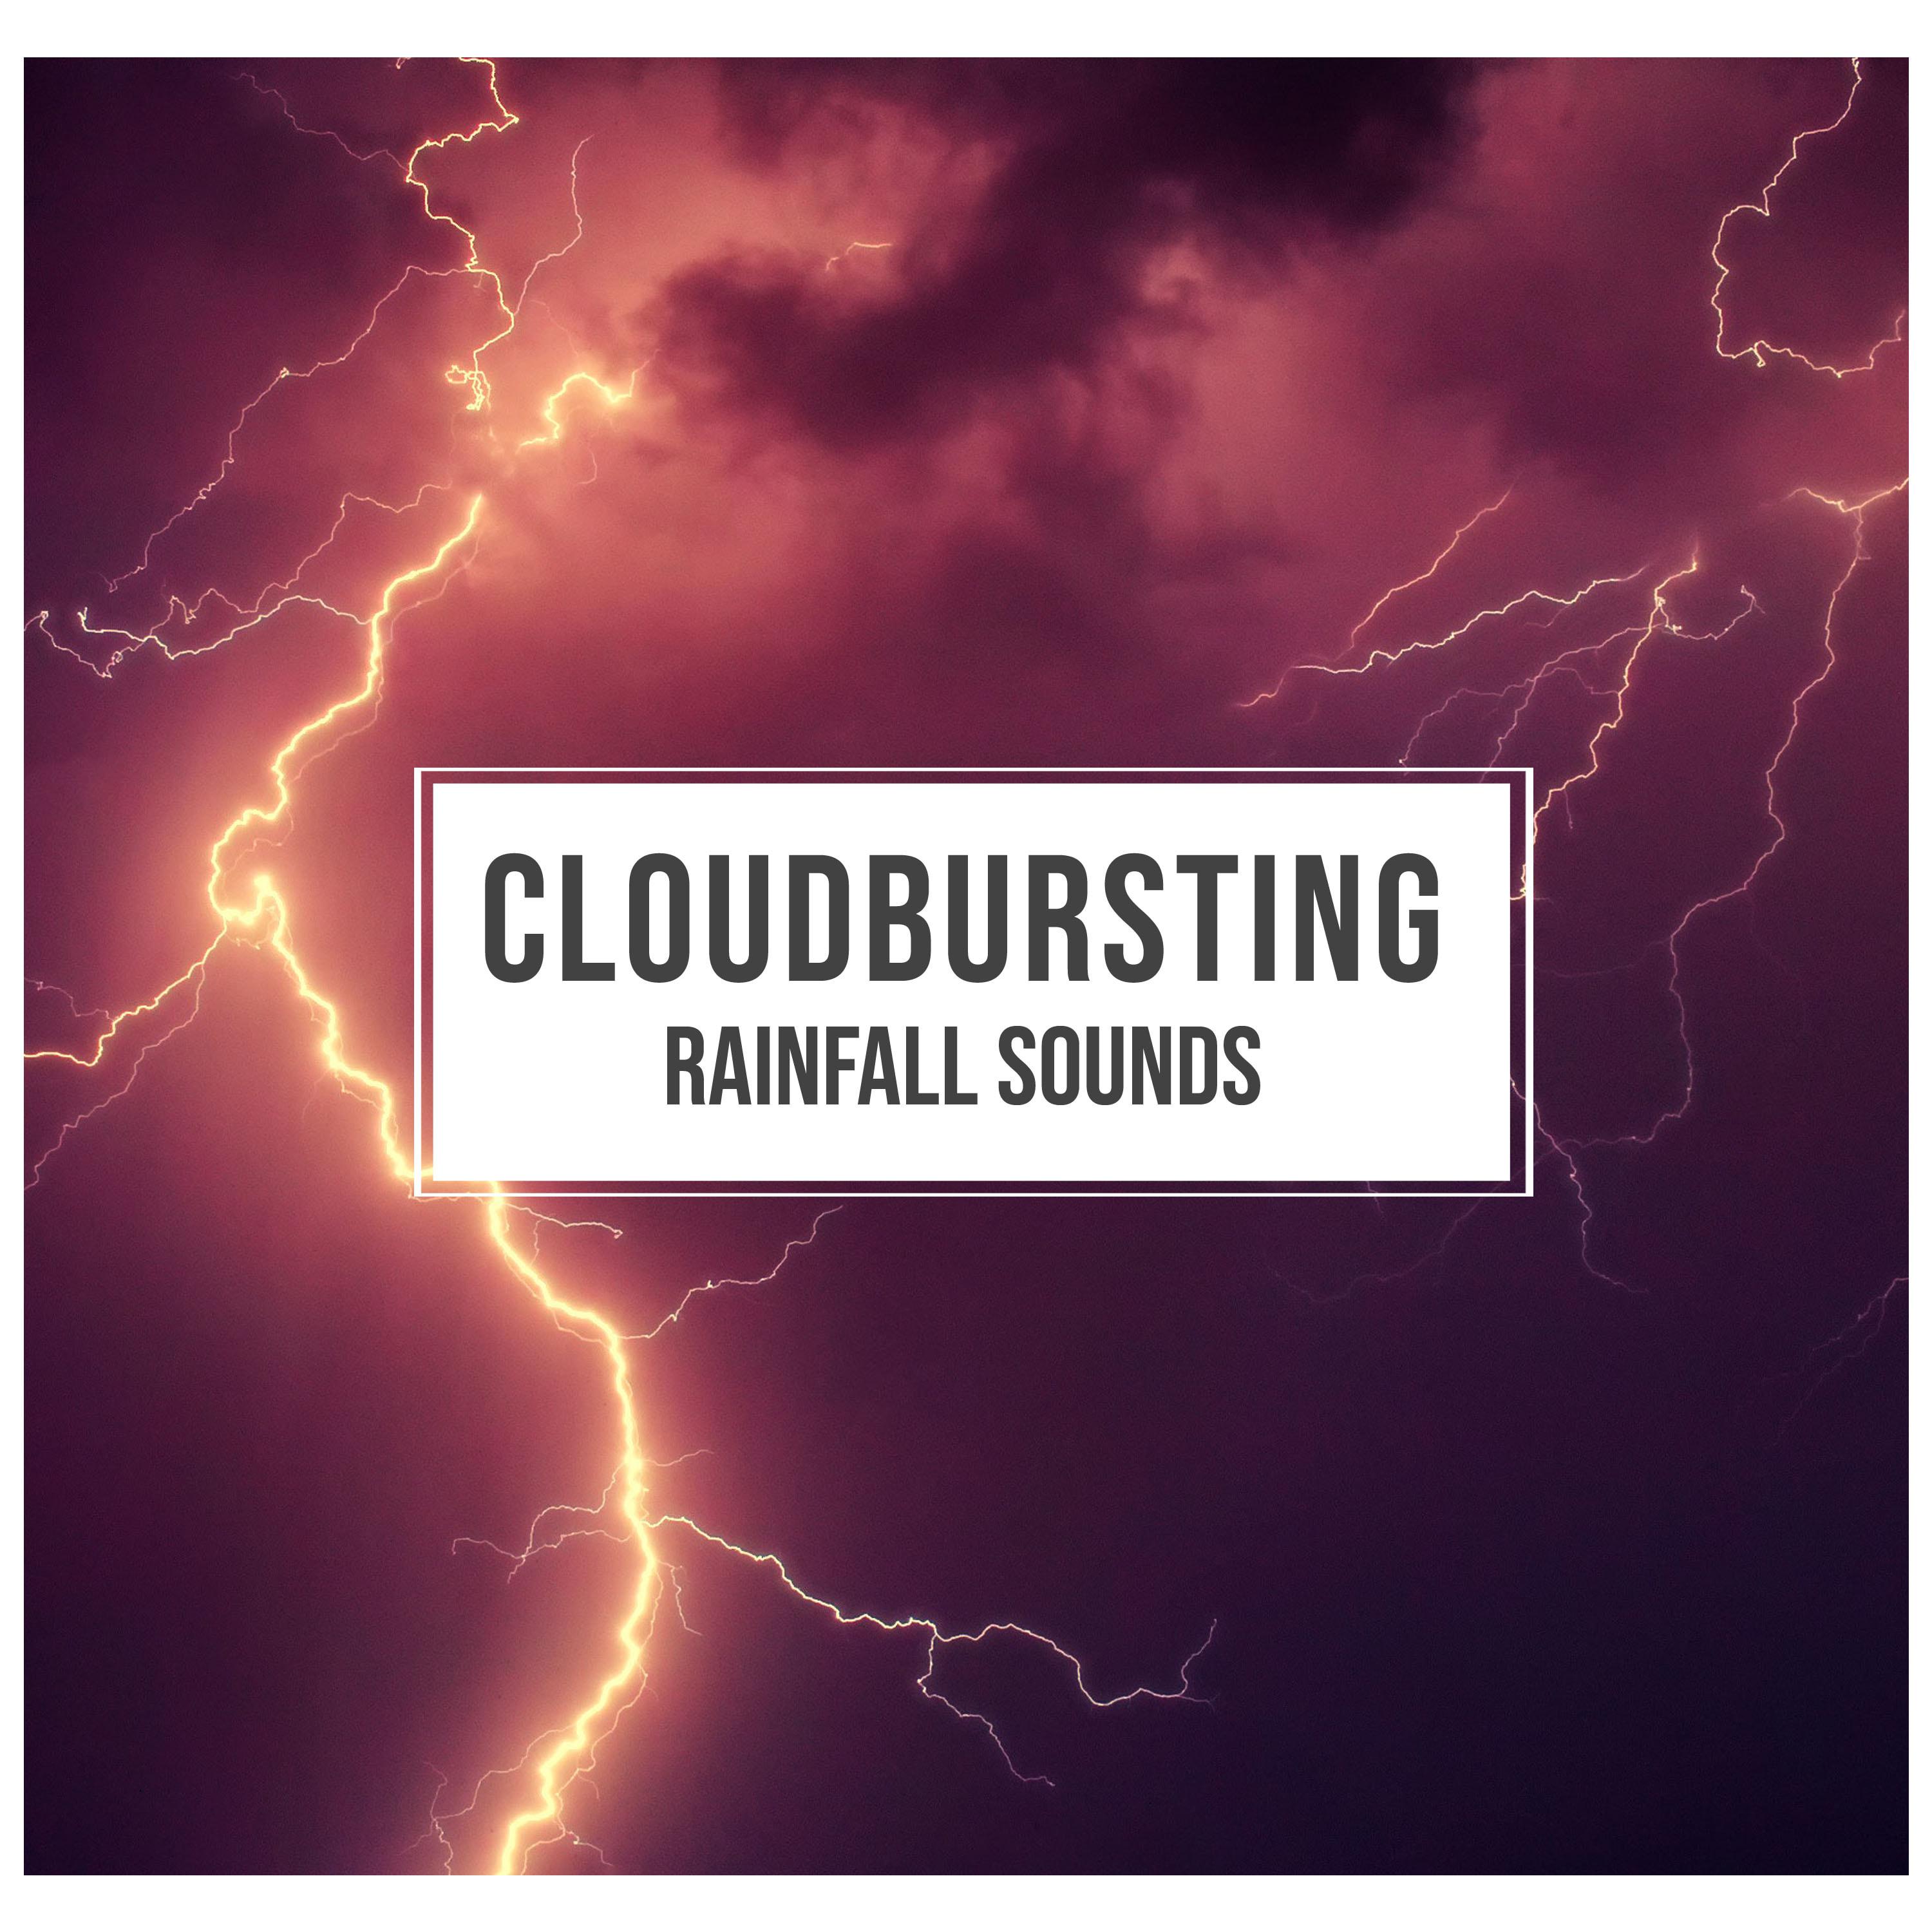 #16 Cloudbursting Rainfall Sounds